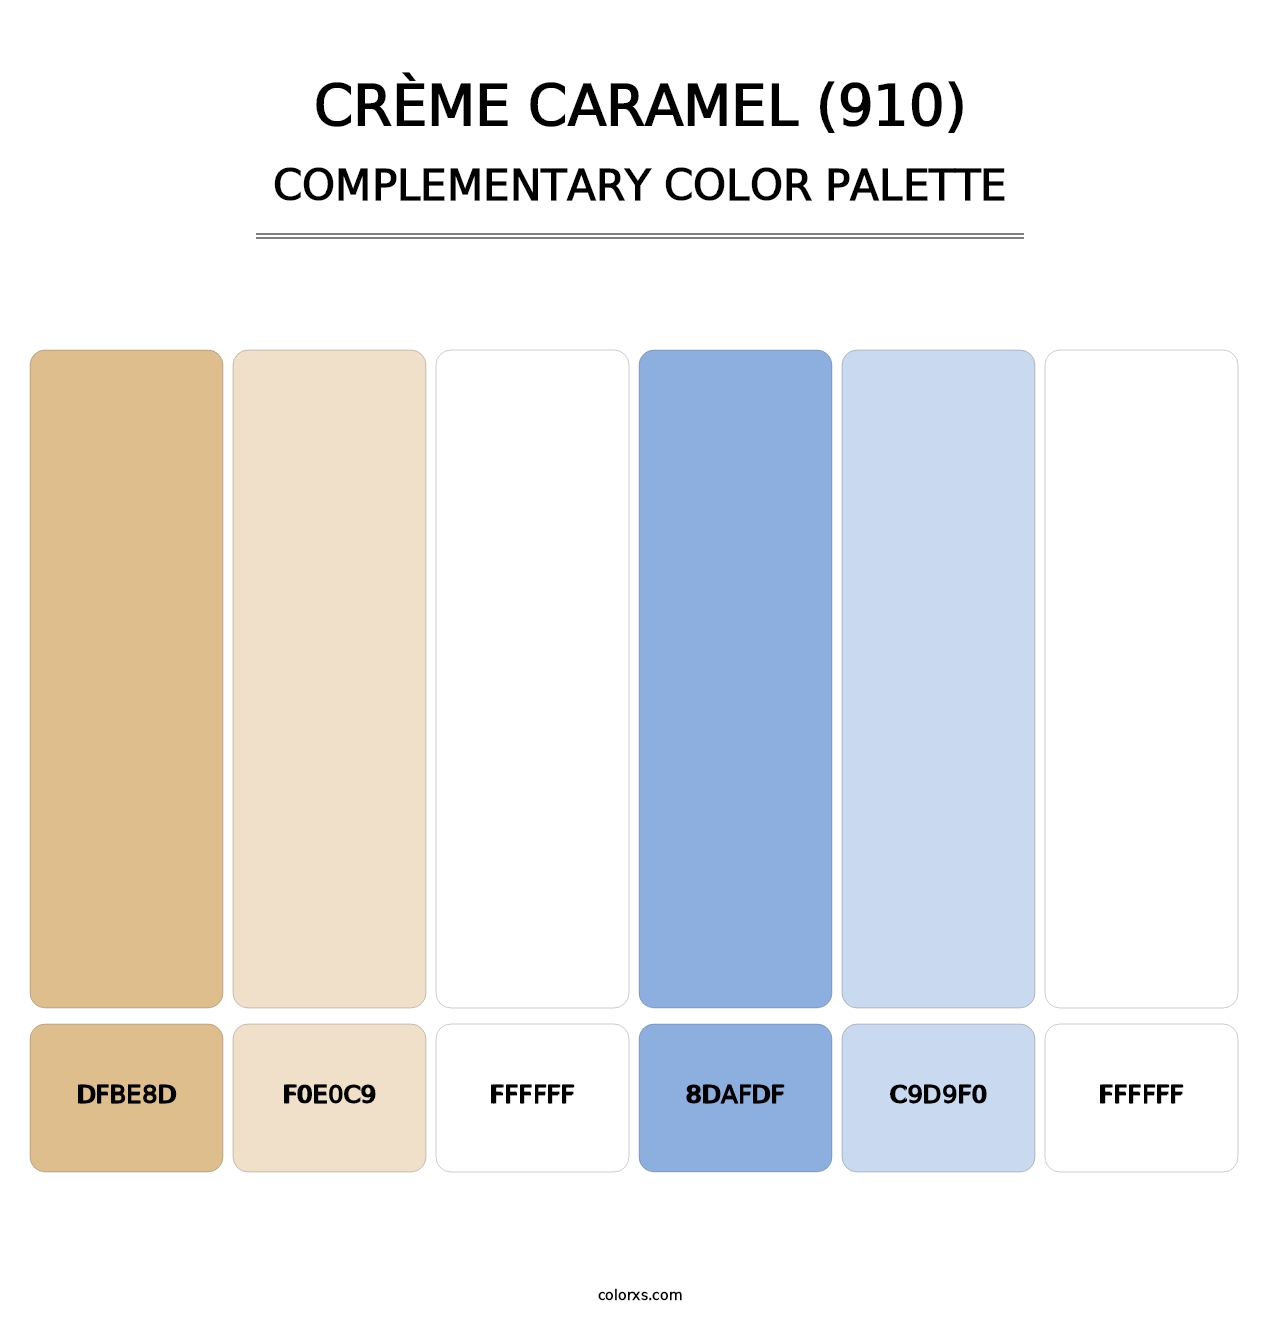 Crème Caramel (910) - Complementary Color Palette